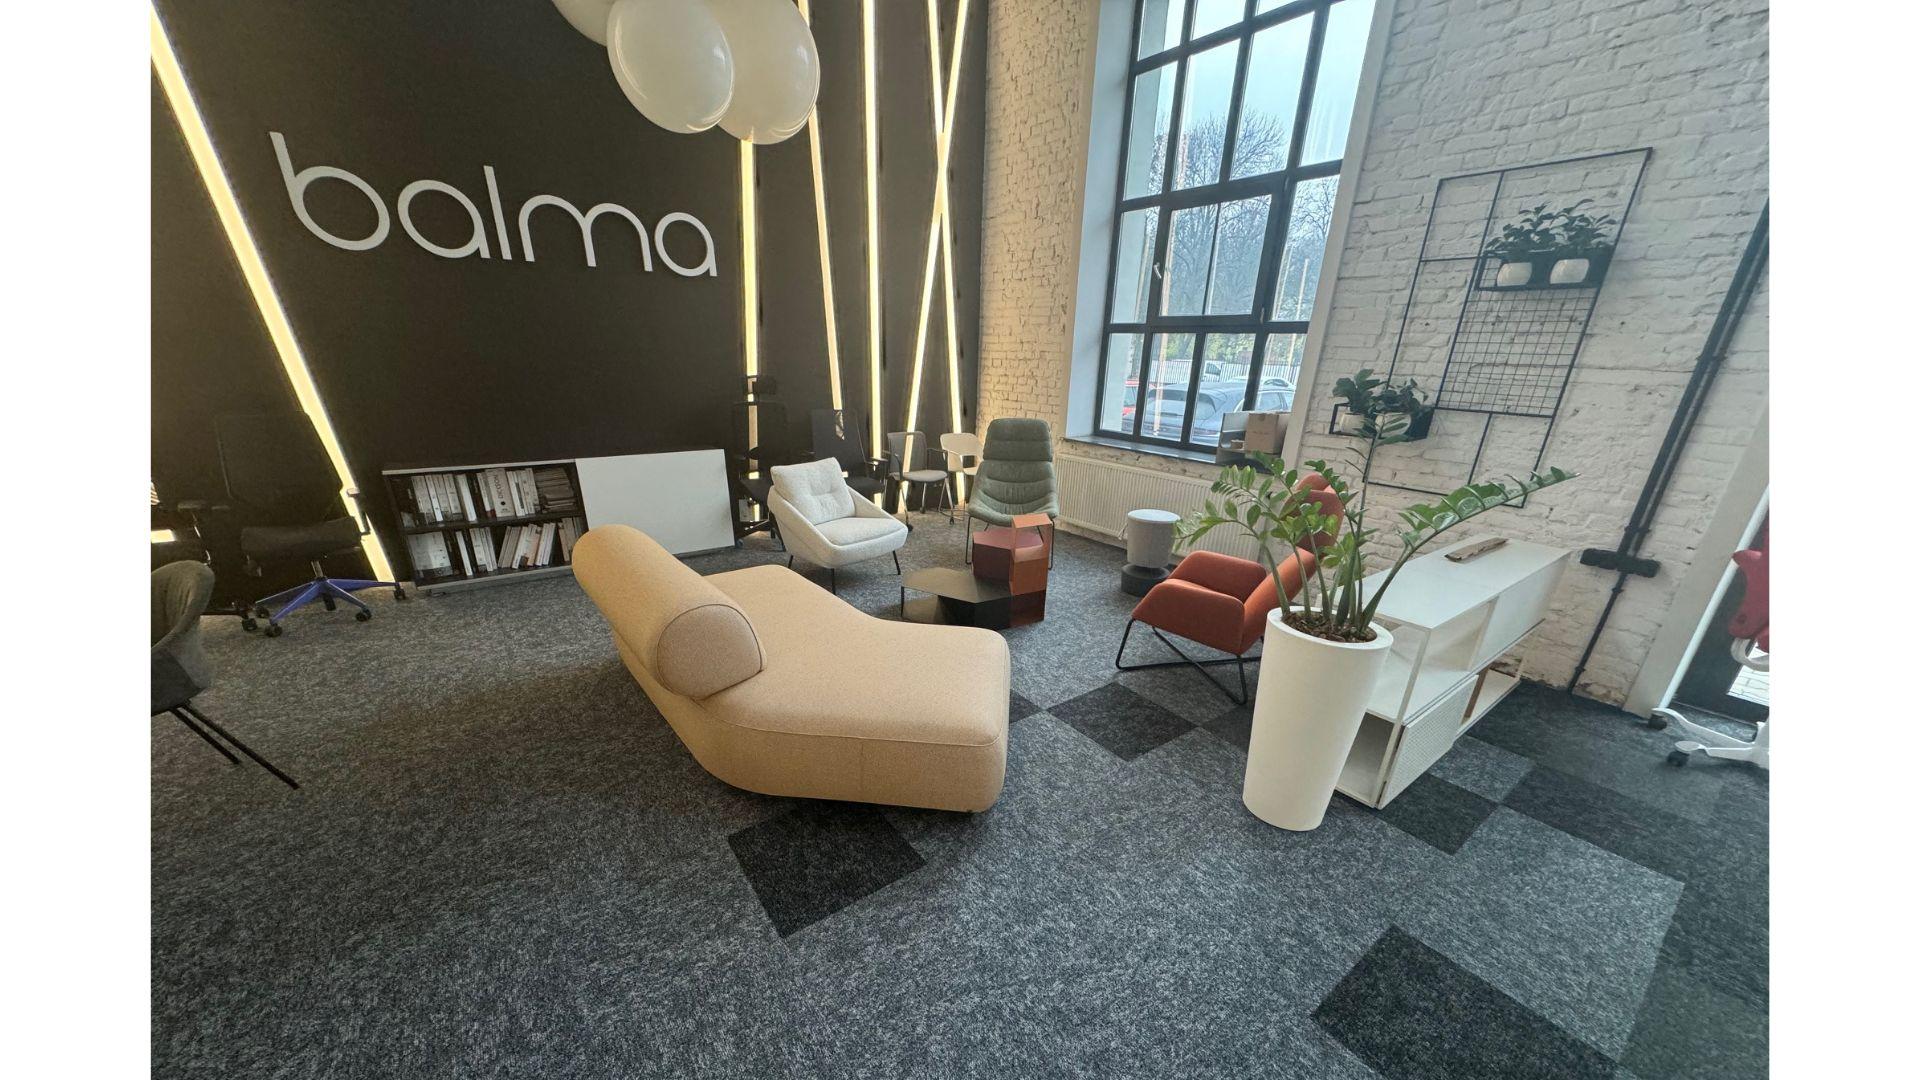 Salon Balma Łódź (3).jpg